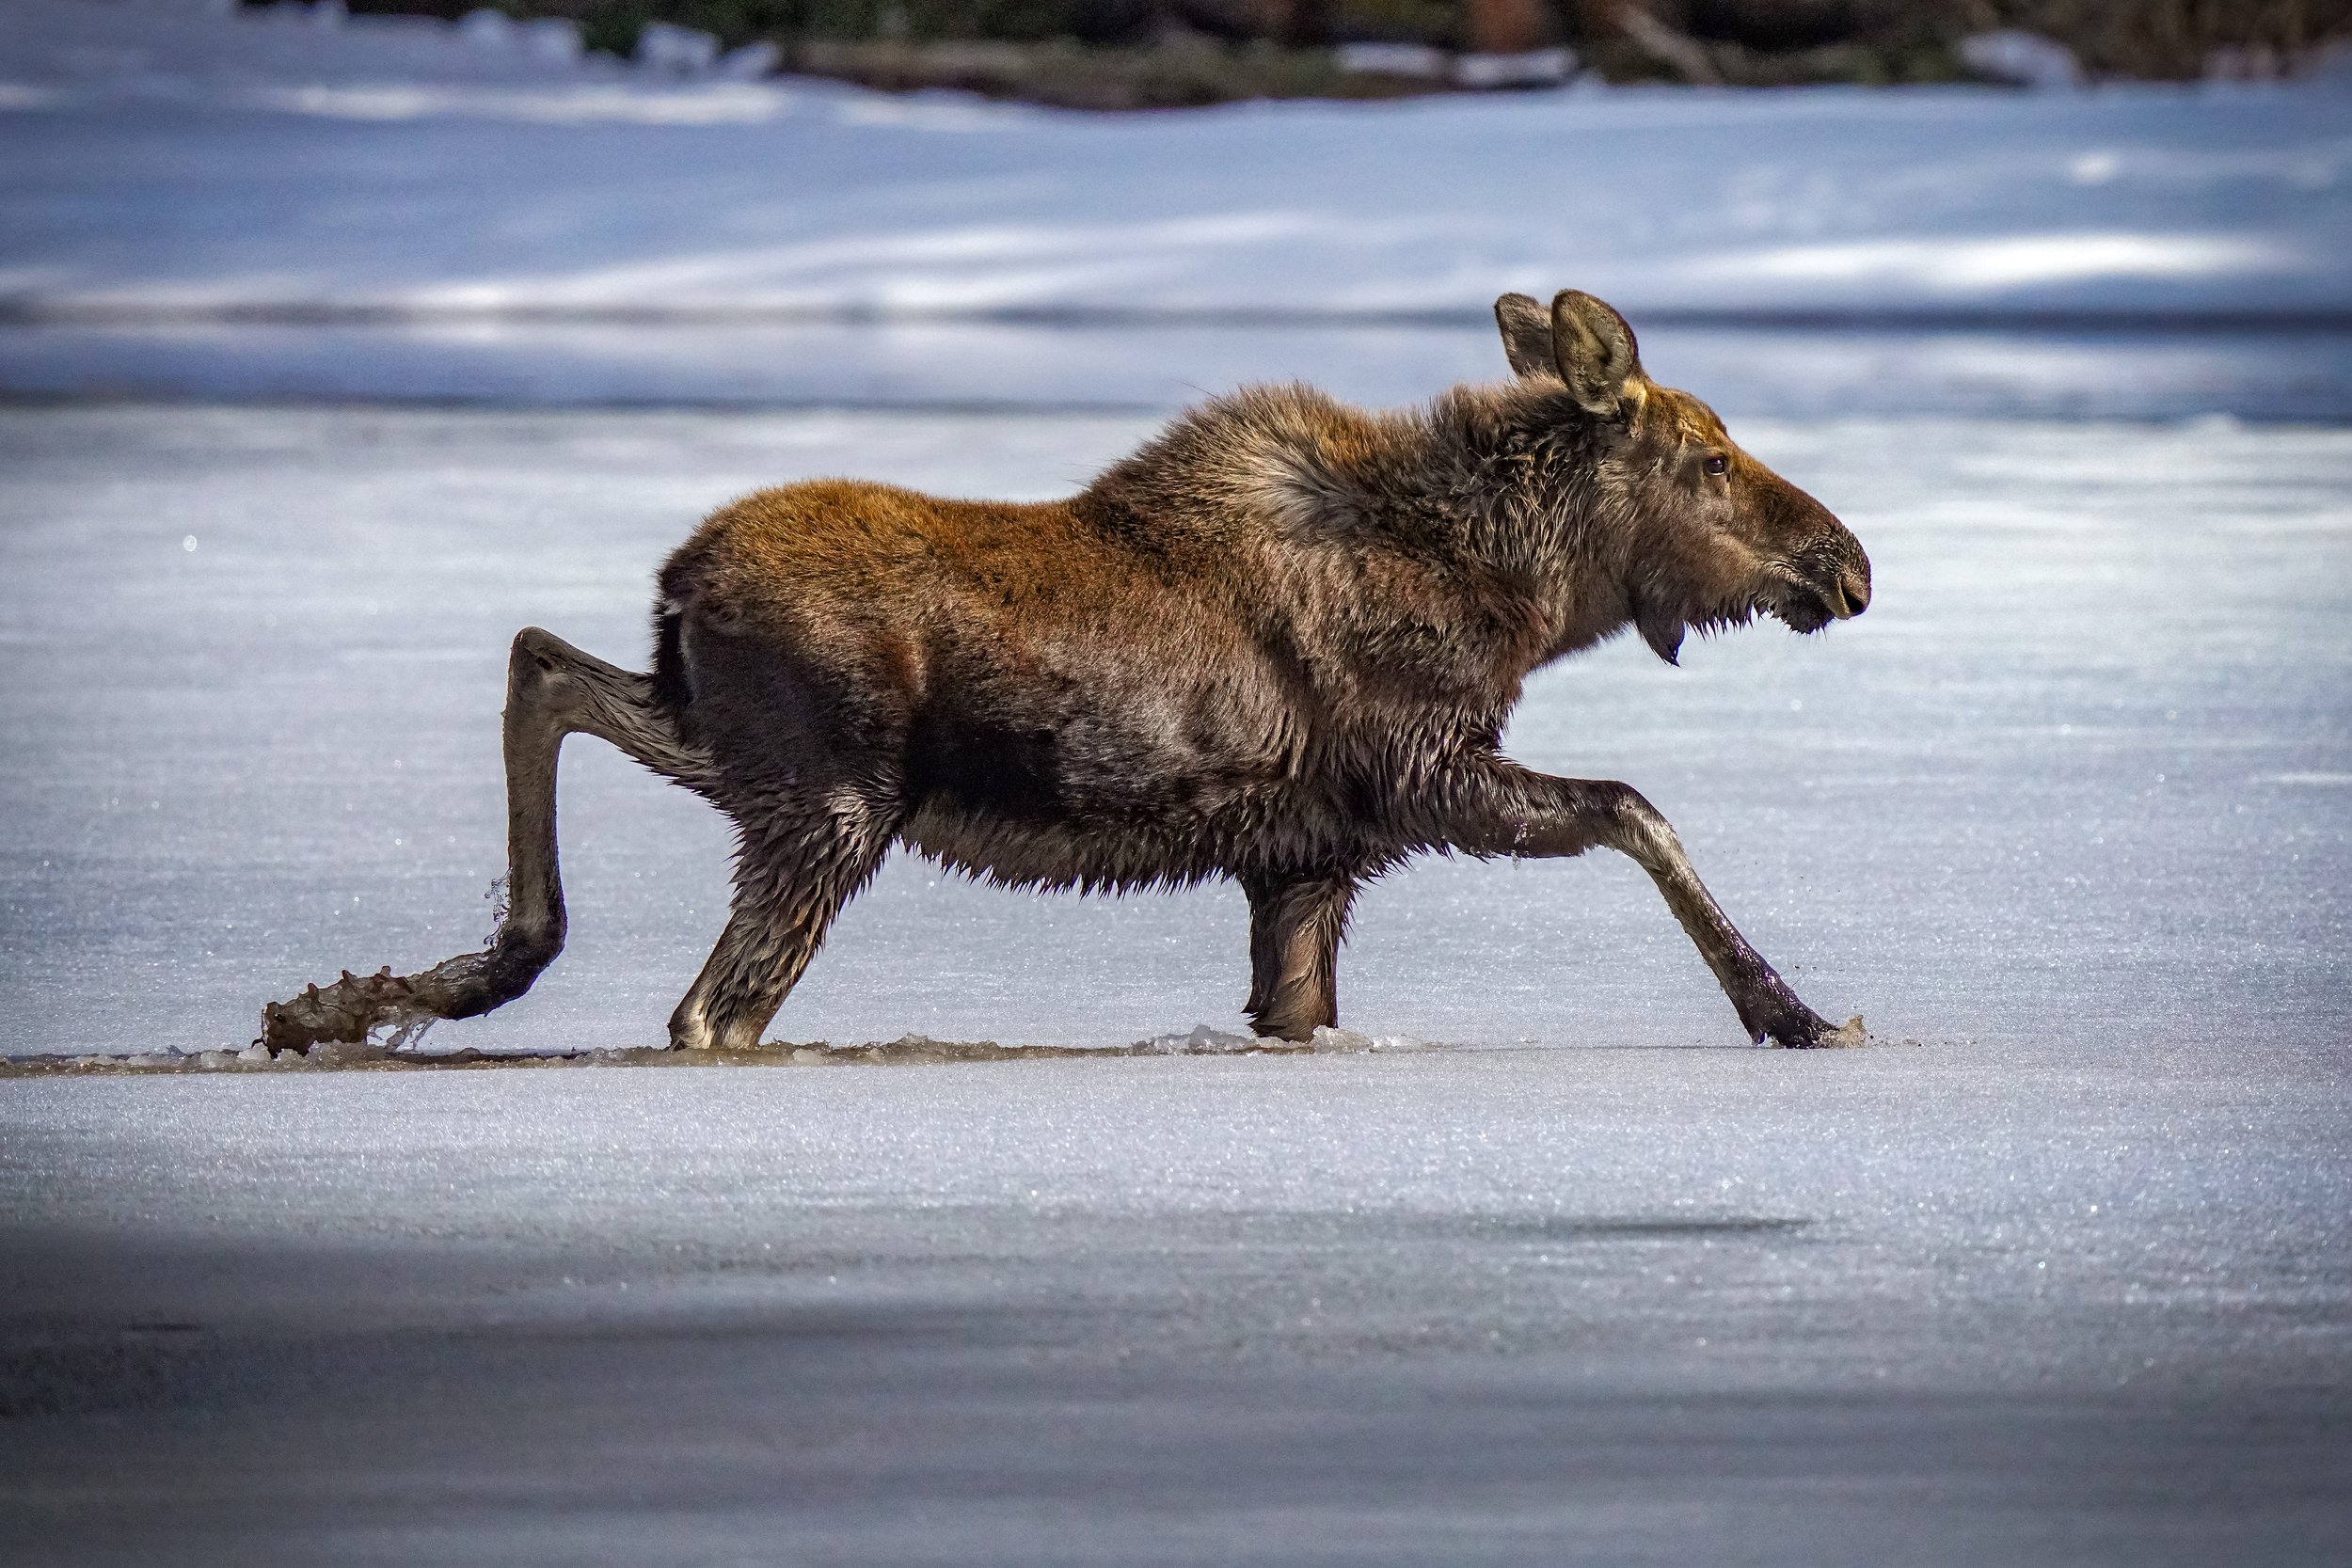 Moose Calf making its way to shore